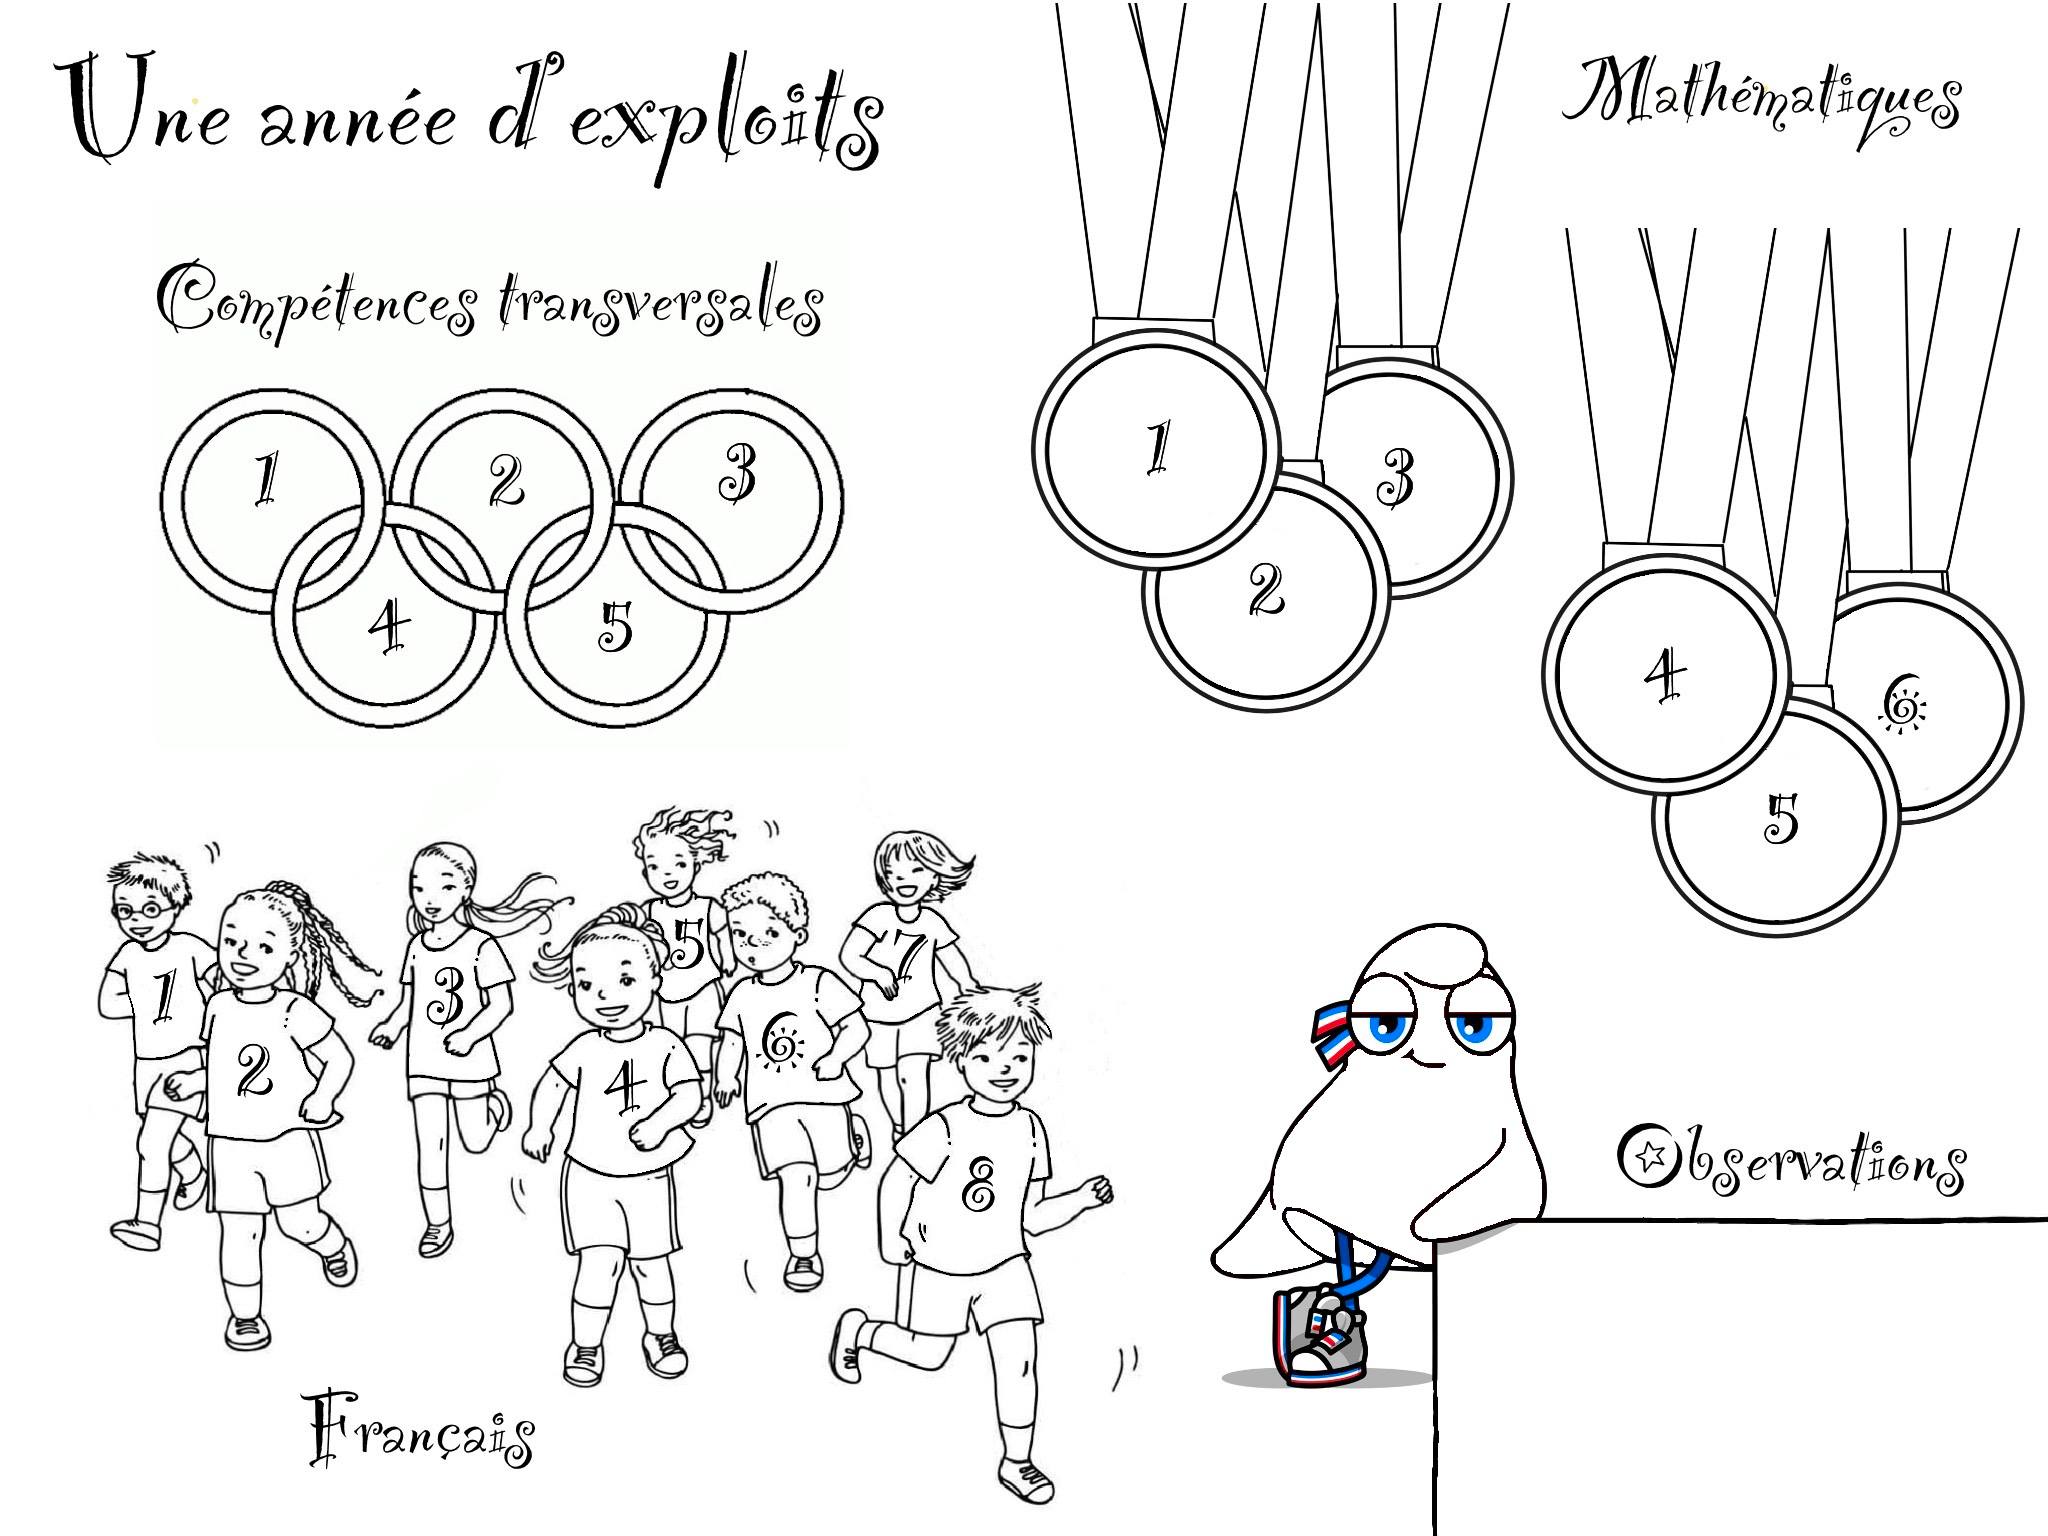 Qui a inventé ?” - Les Jeux olympiques - Images Doc